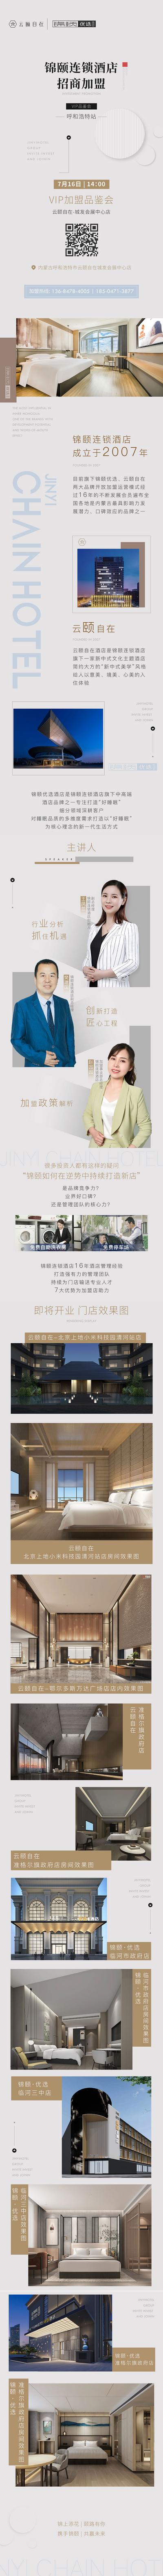 南门网 海报 长图 酒店 商务 招商 加盟 环境